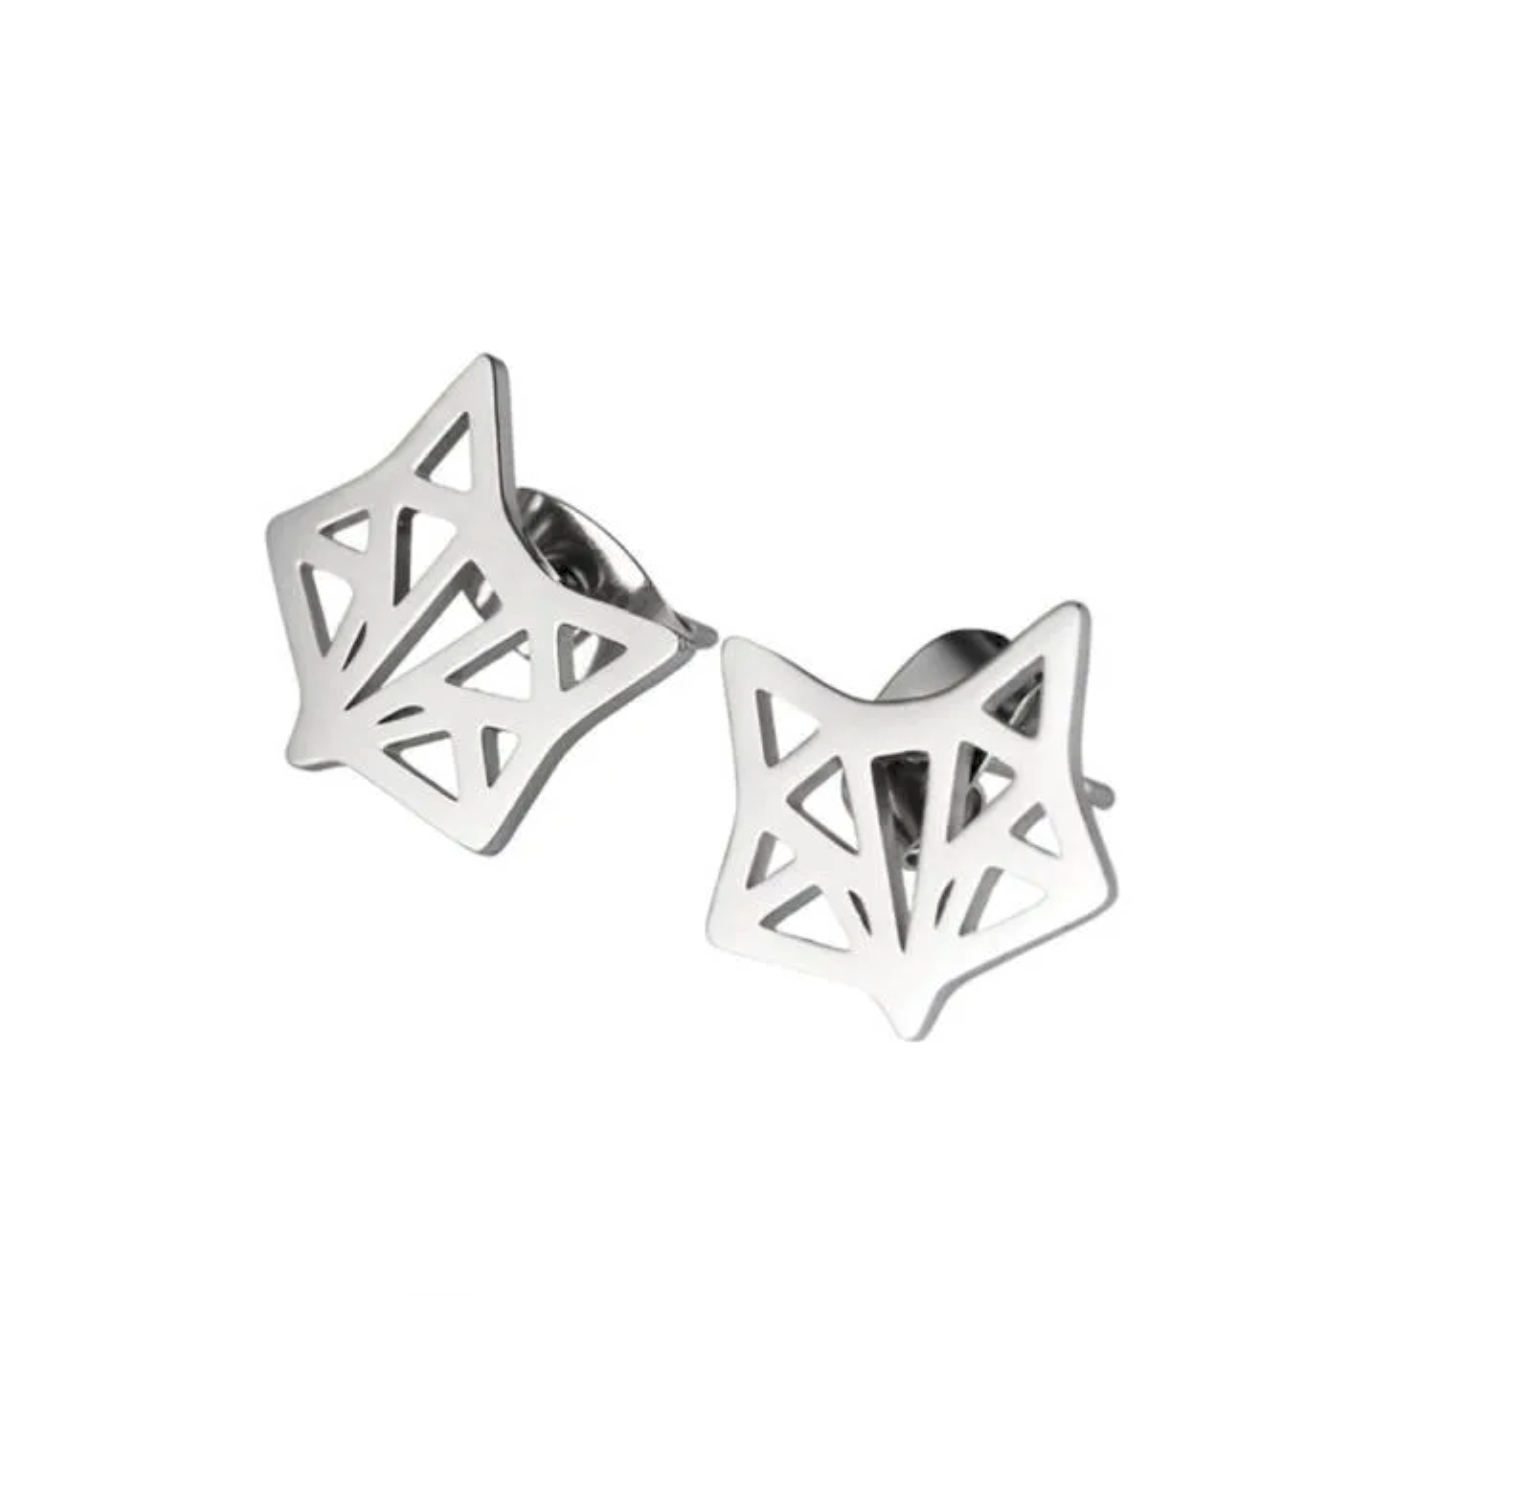 Boucles d'oreilles acier argent tête de renard origami. Détails produit : Couleur argent. Acier inoxydable. Taille 9 mm x 9 mm.  Version couleur or